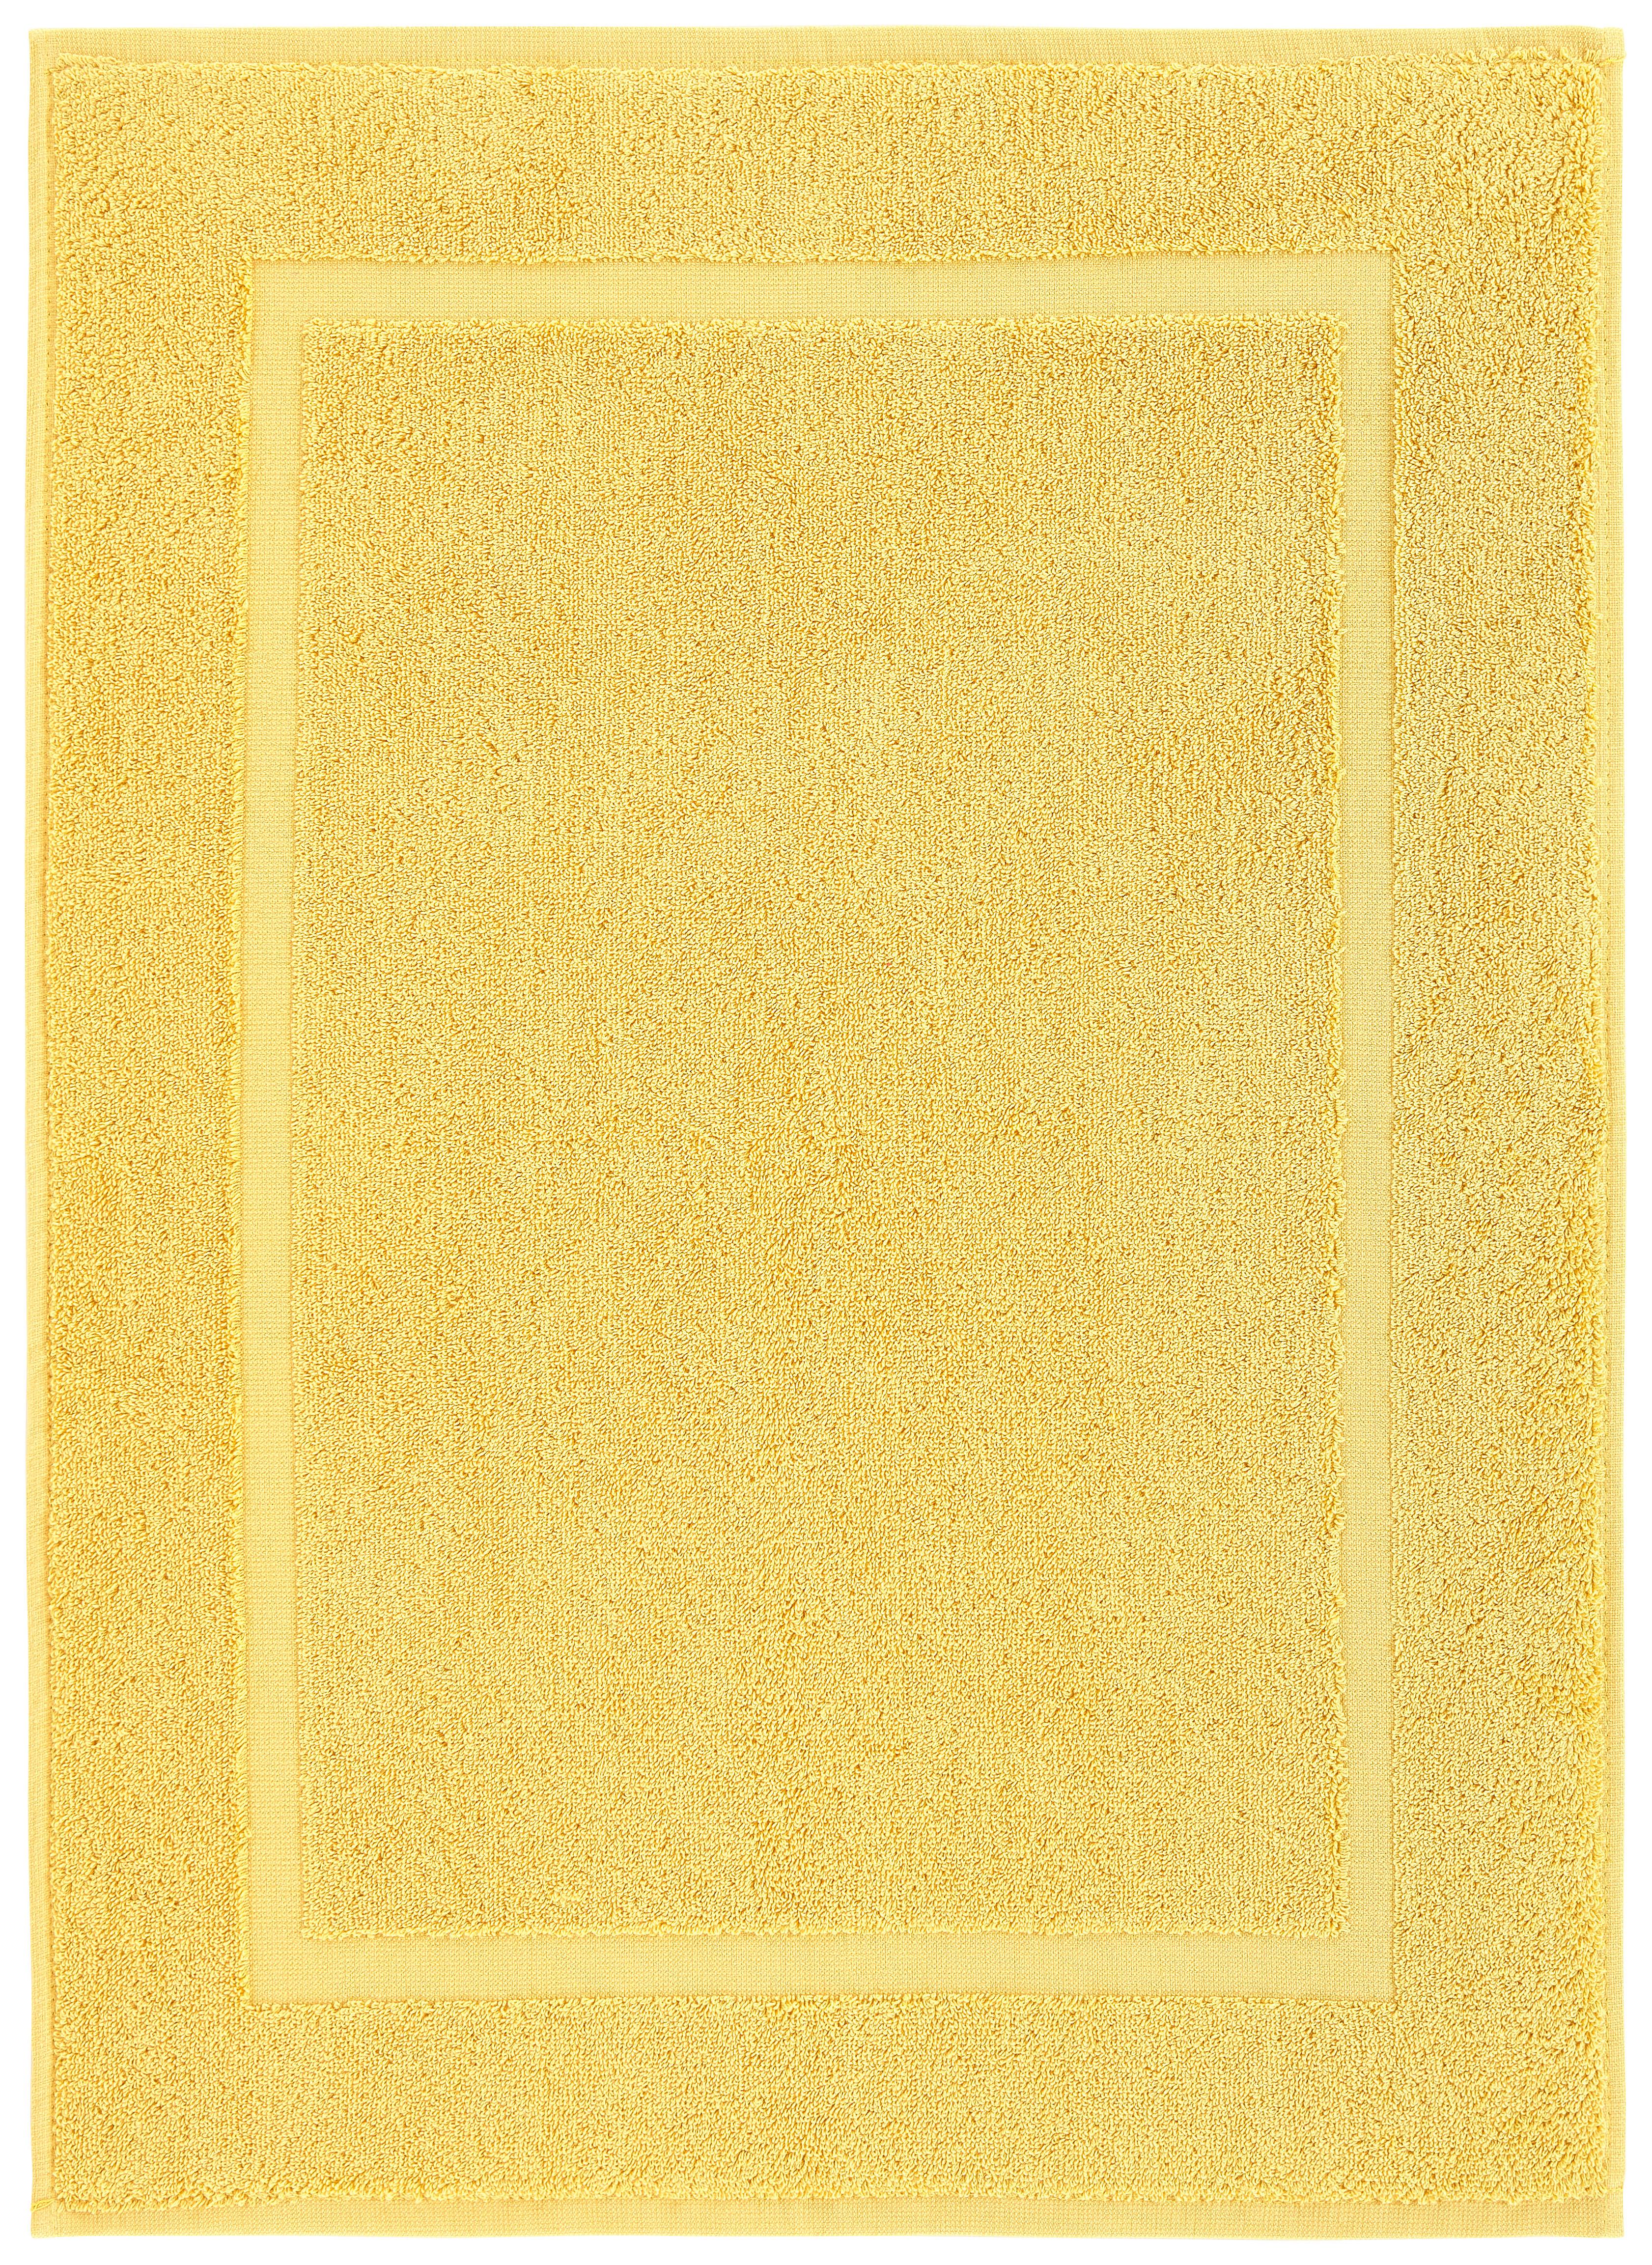 Předložka Koupelnová Melanie, 50/70cm, Žlutá - žlutá, textil (50/70cm) - Modern Living